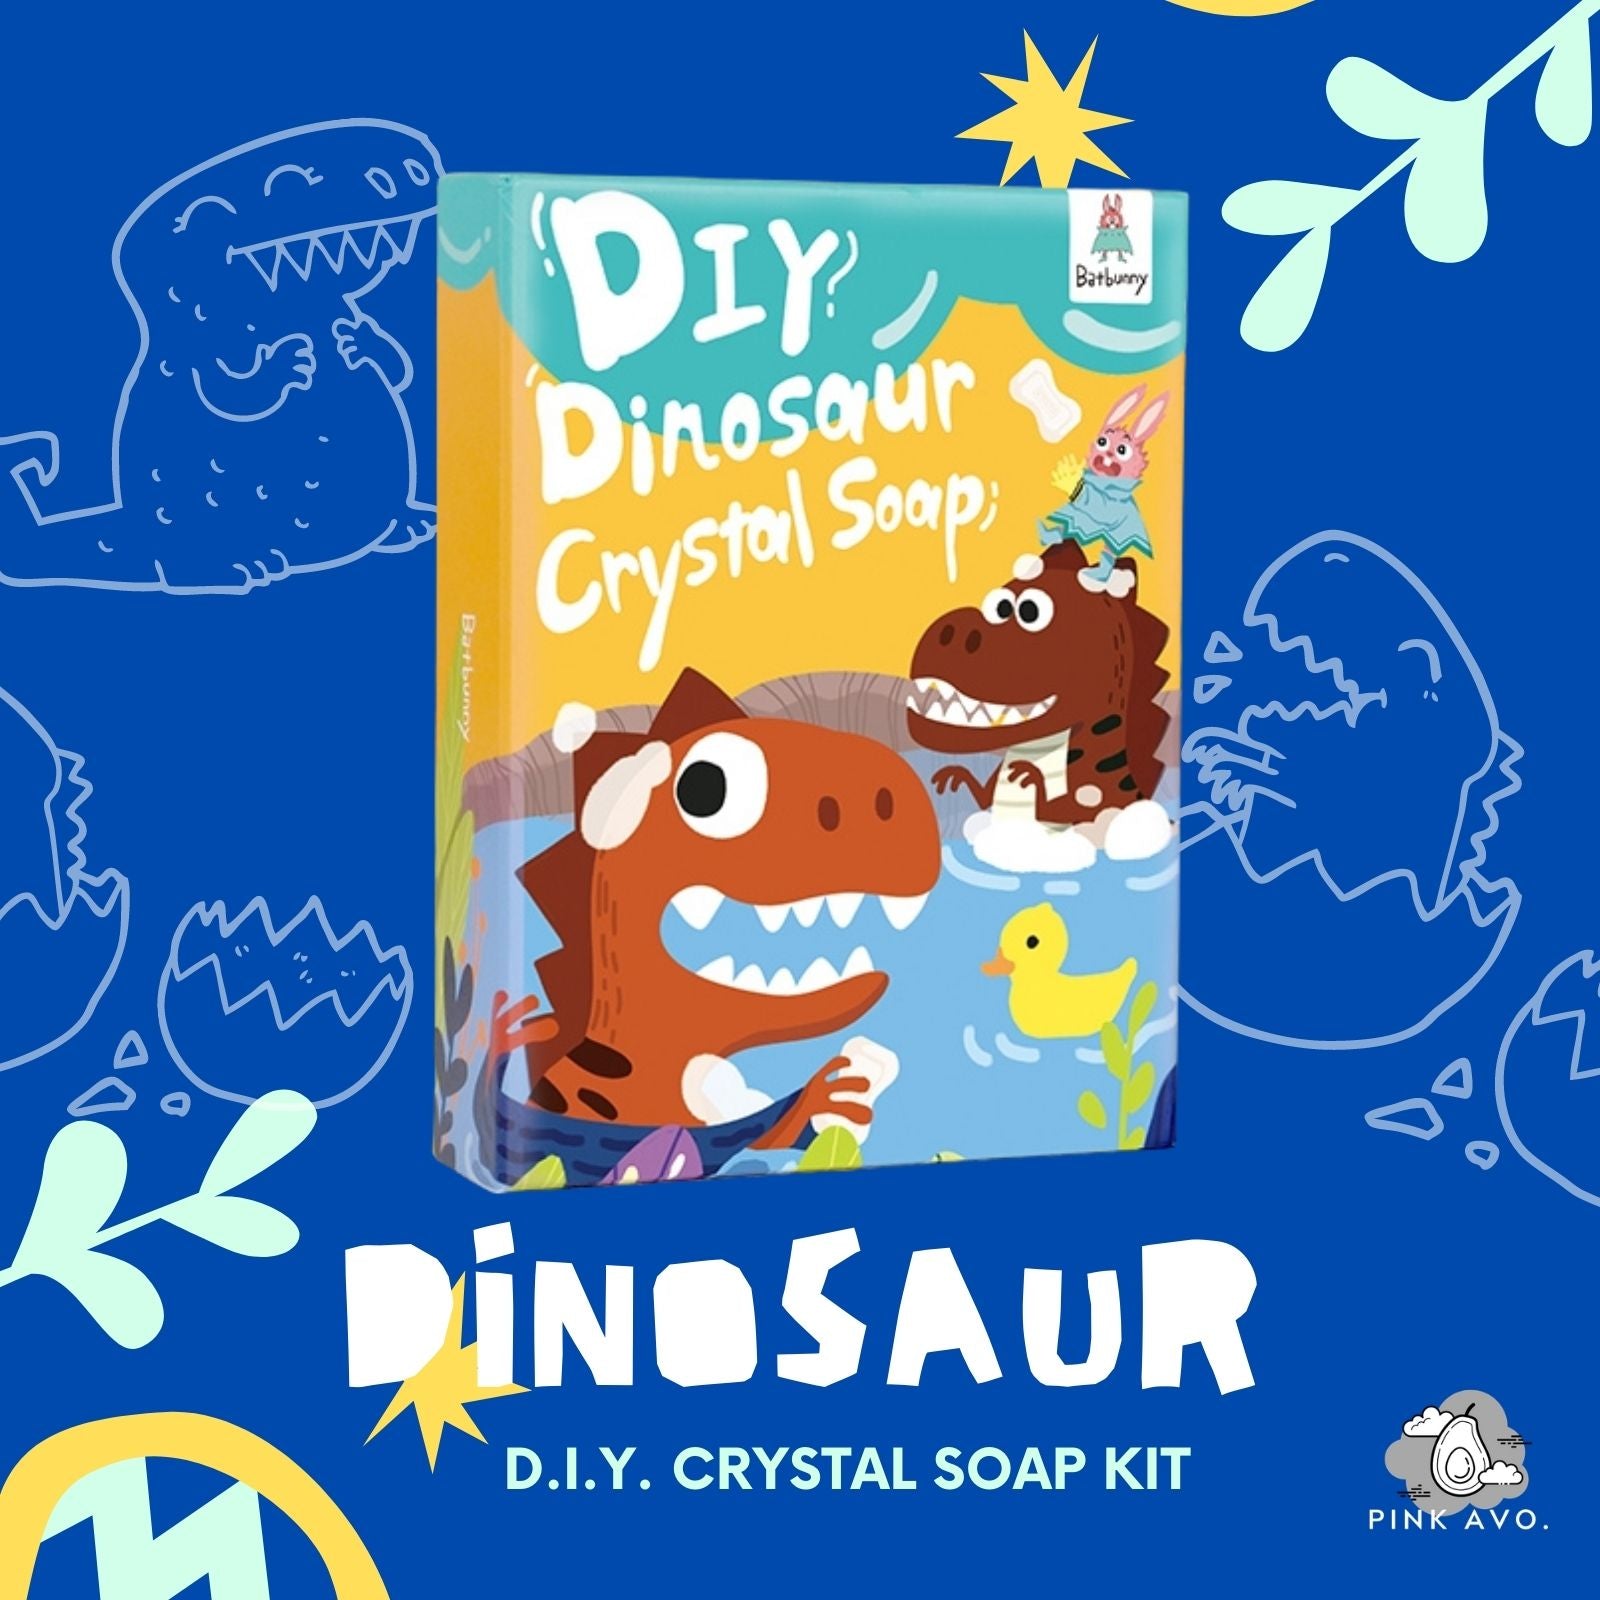 Bat Bunny D.I.Y. Crystal Soap-making Kit